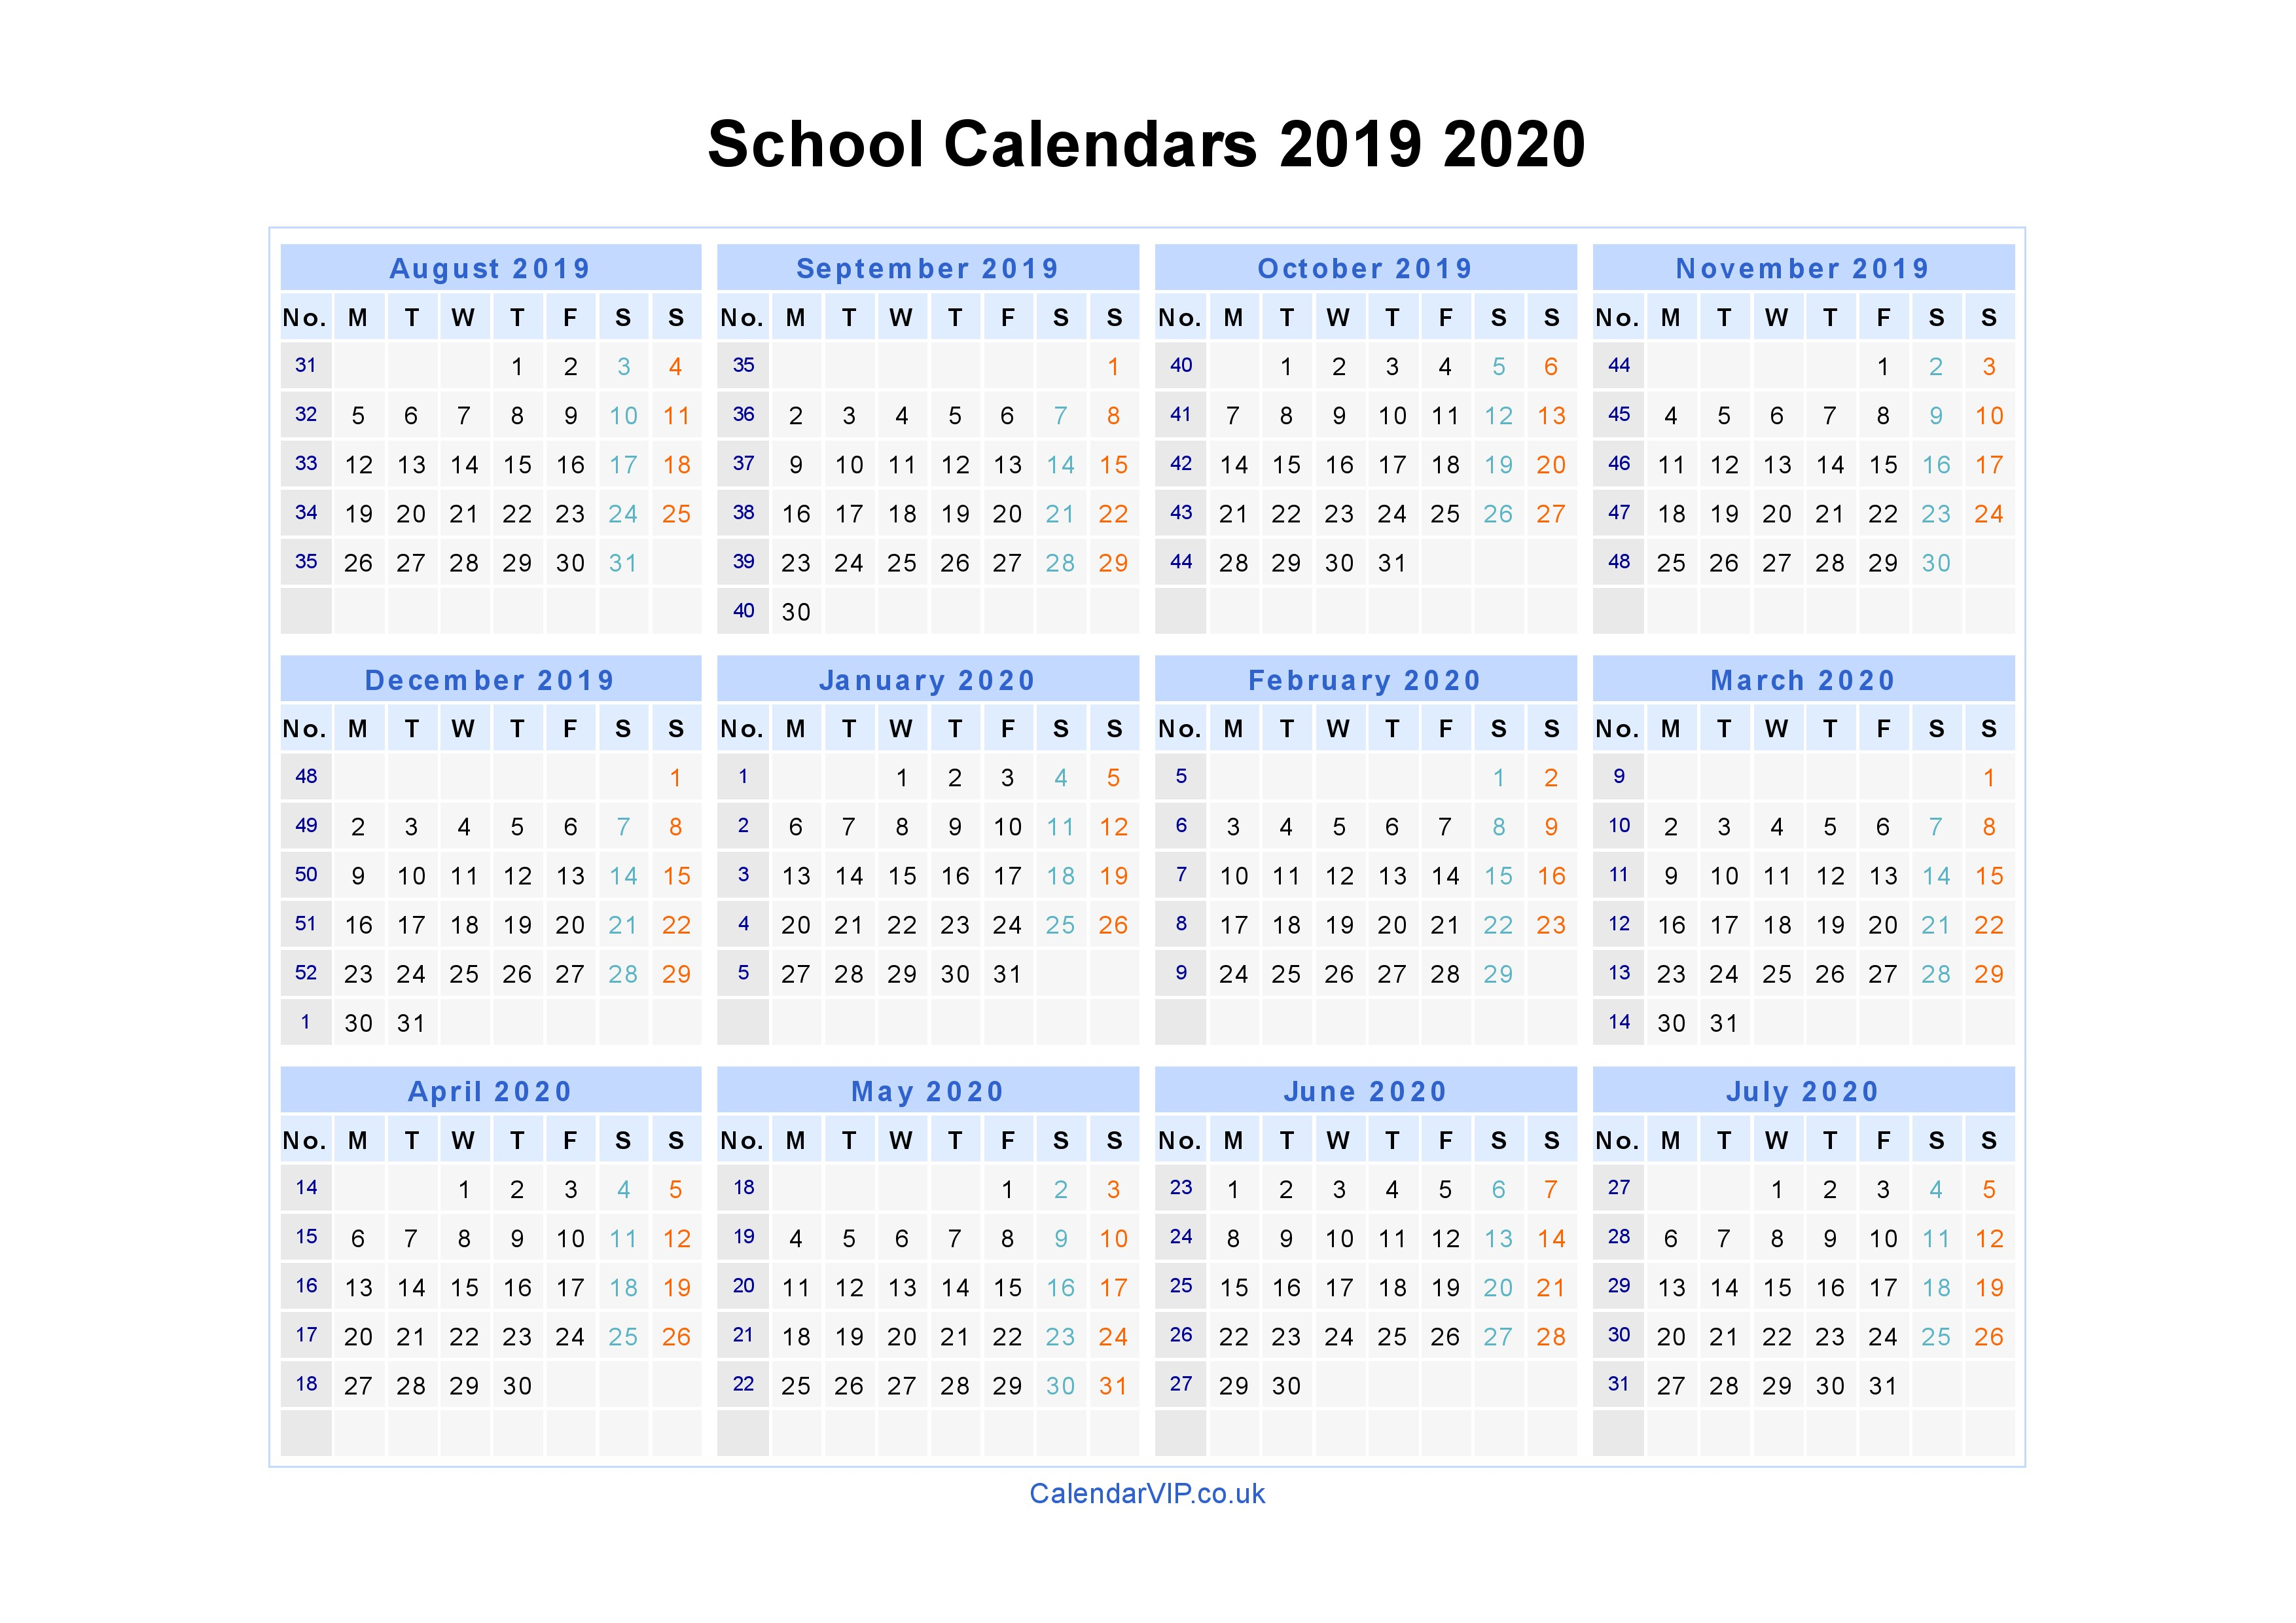 School Calendars 2019 2020 - Calendar From August 2019 To